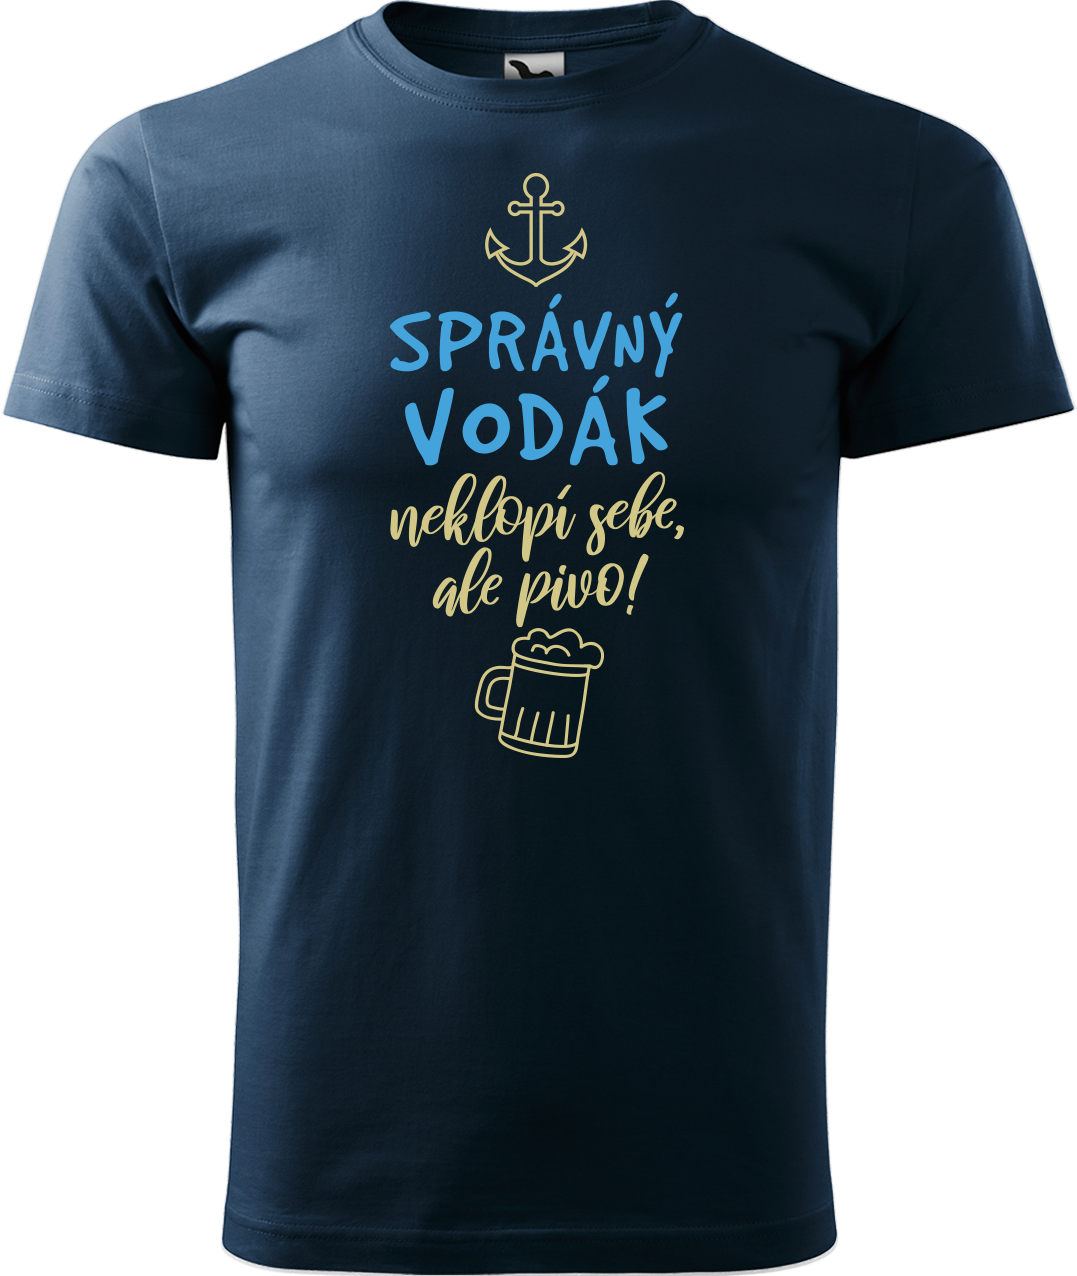 Pánské vodácké tričko - Správný vodák Velikost: M, Barva: Námořní modrá (02)